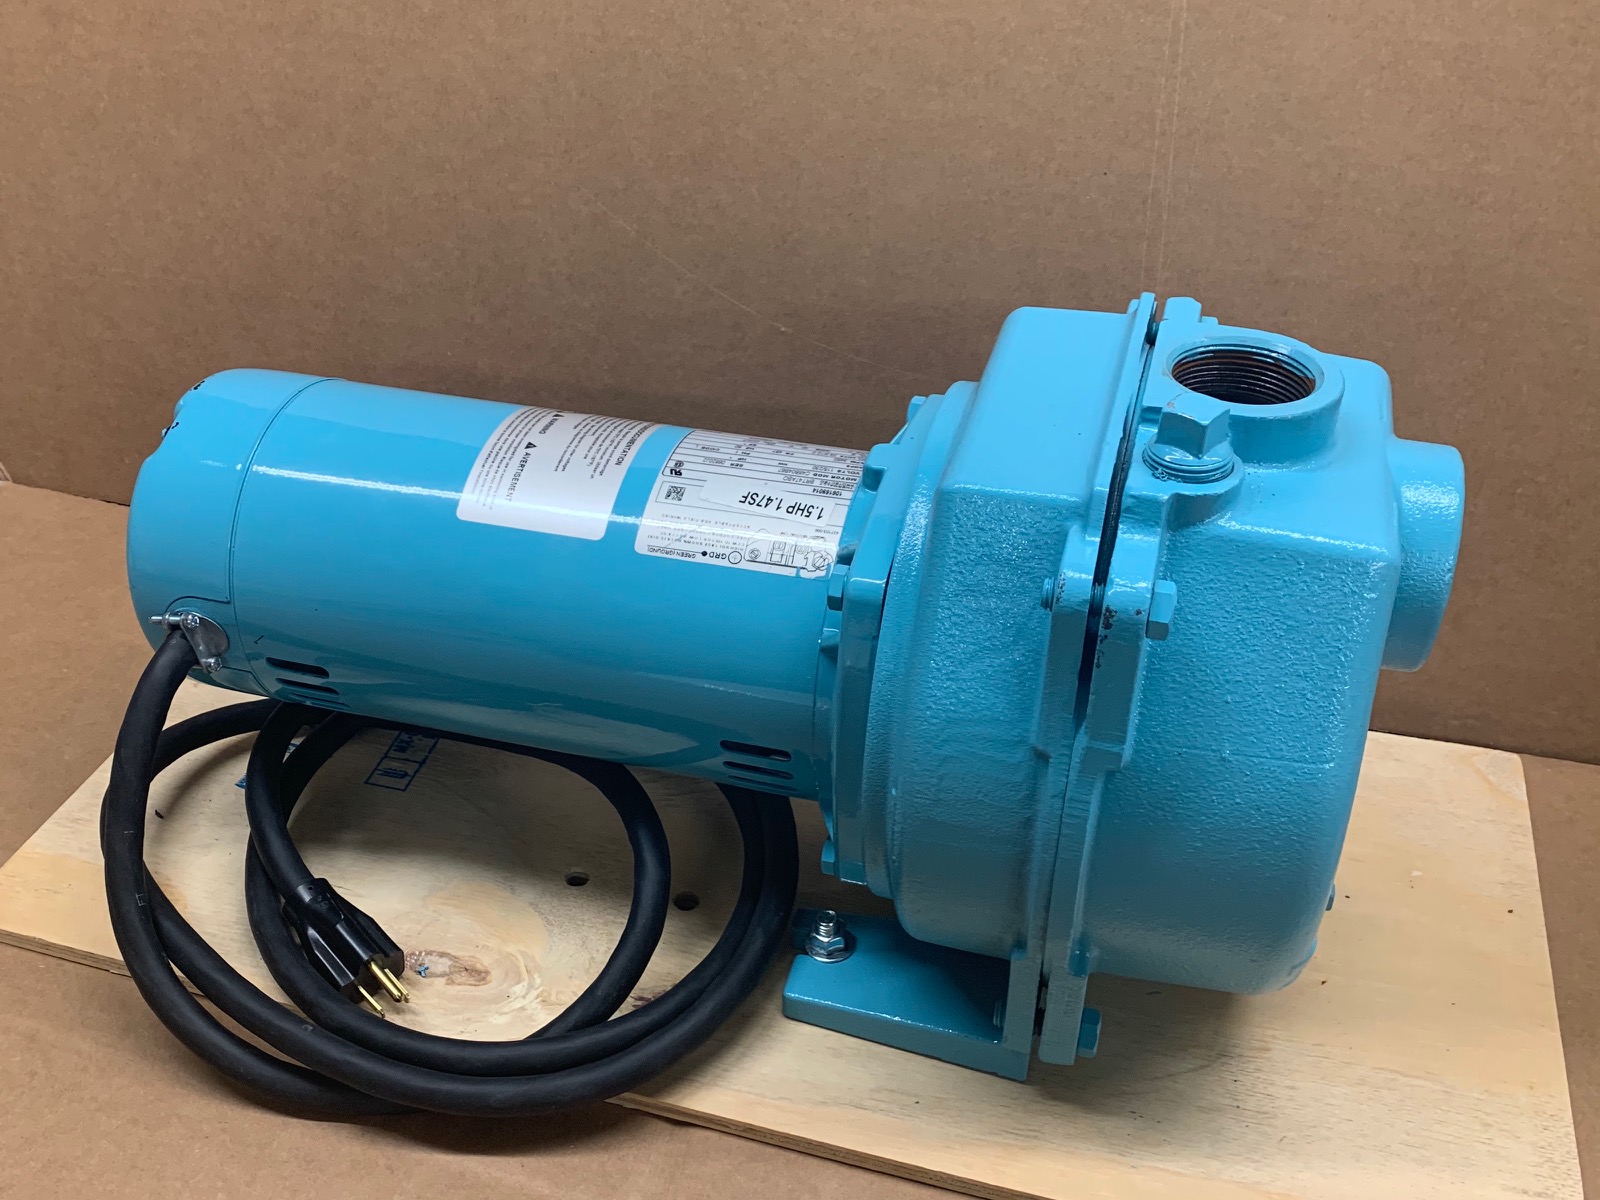 A blue sprinkler pump